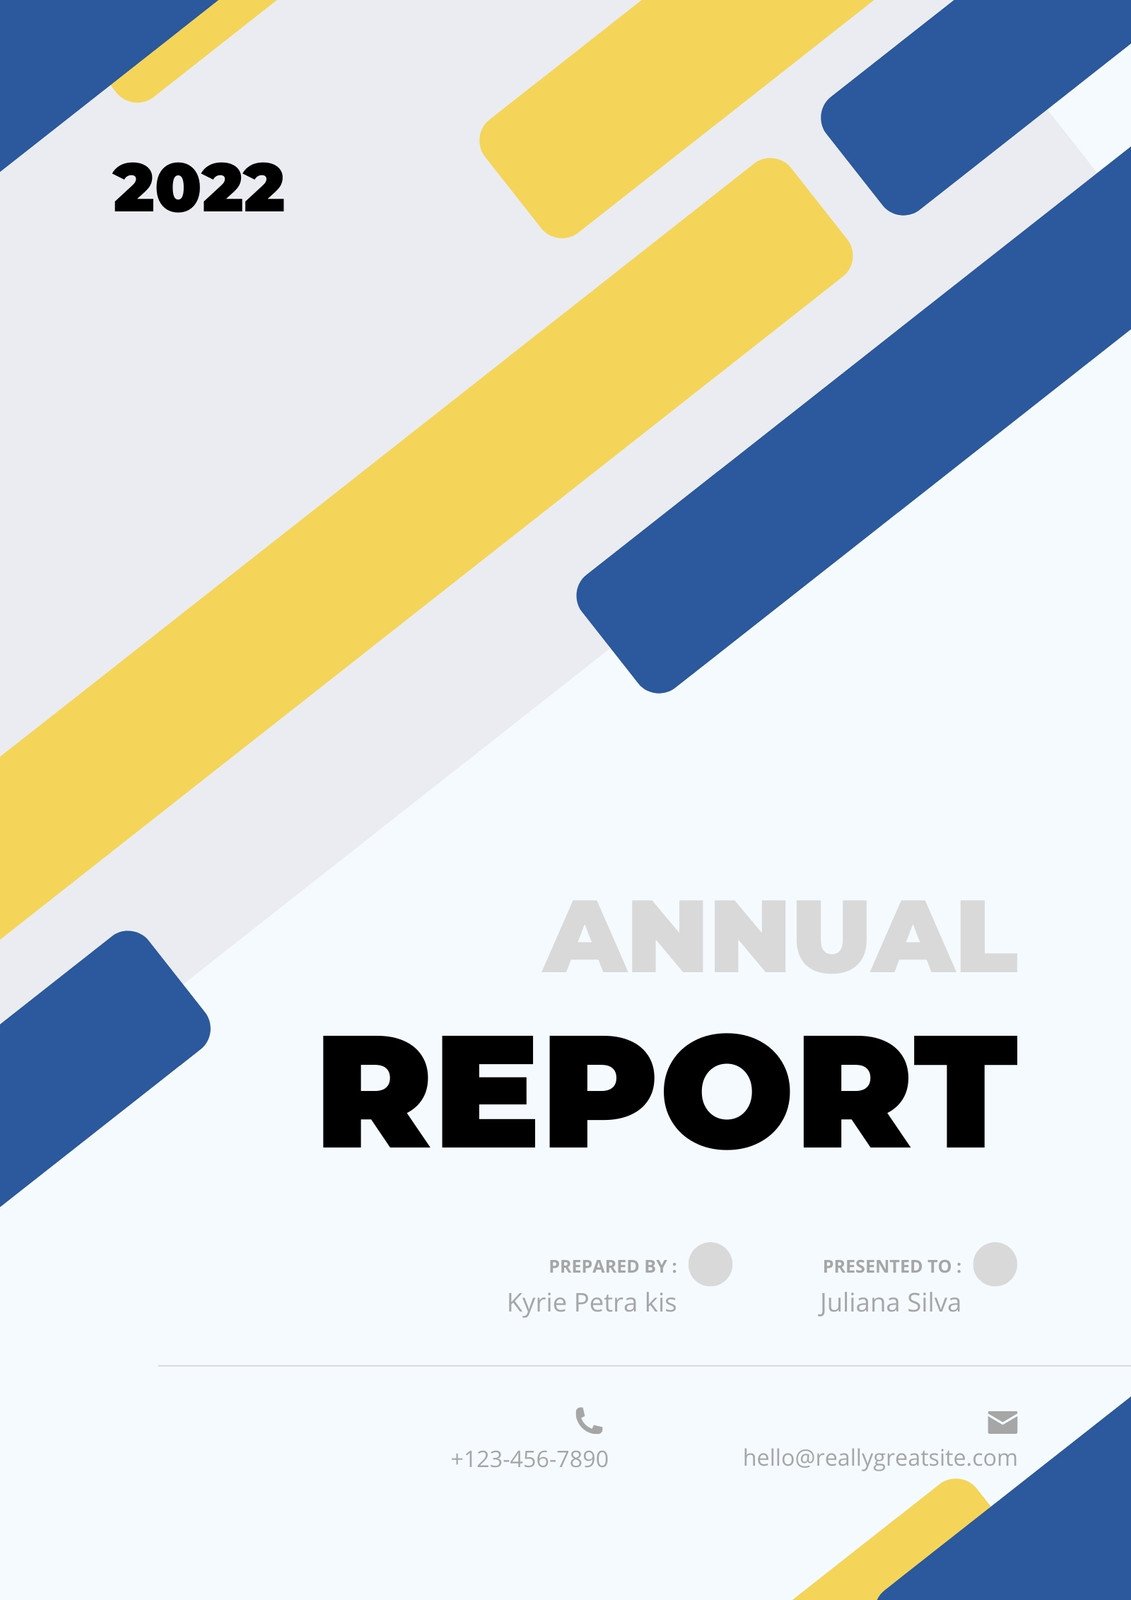 annual report cover design template